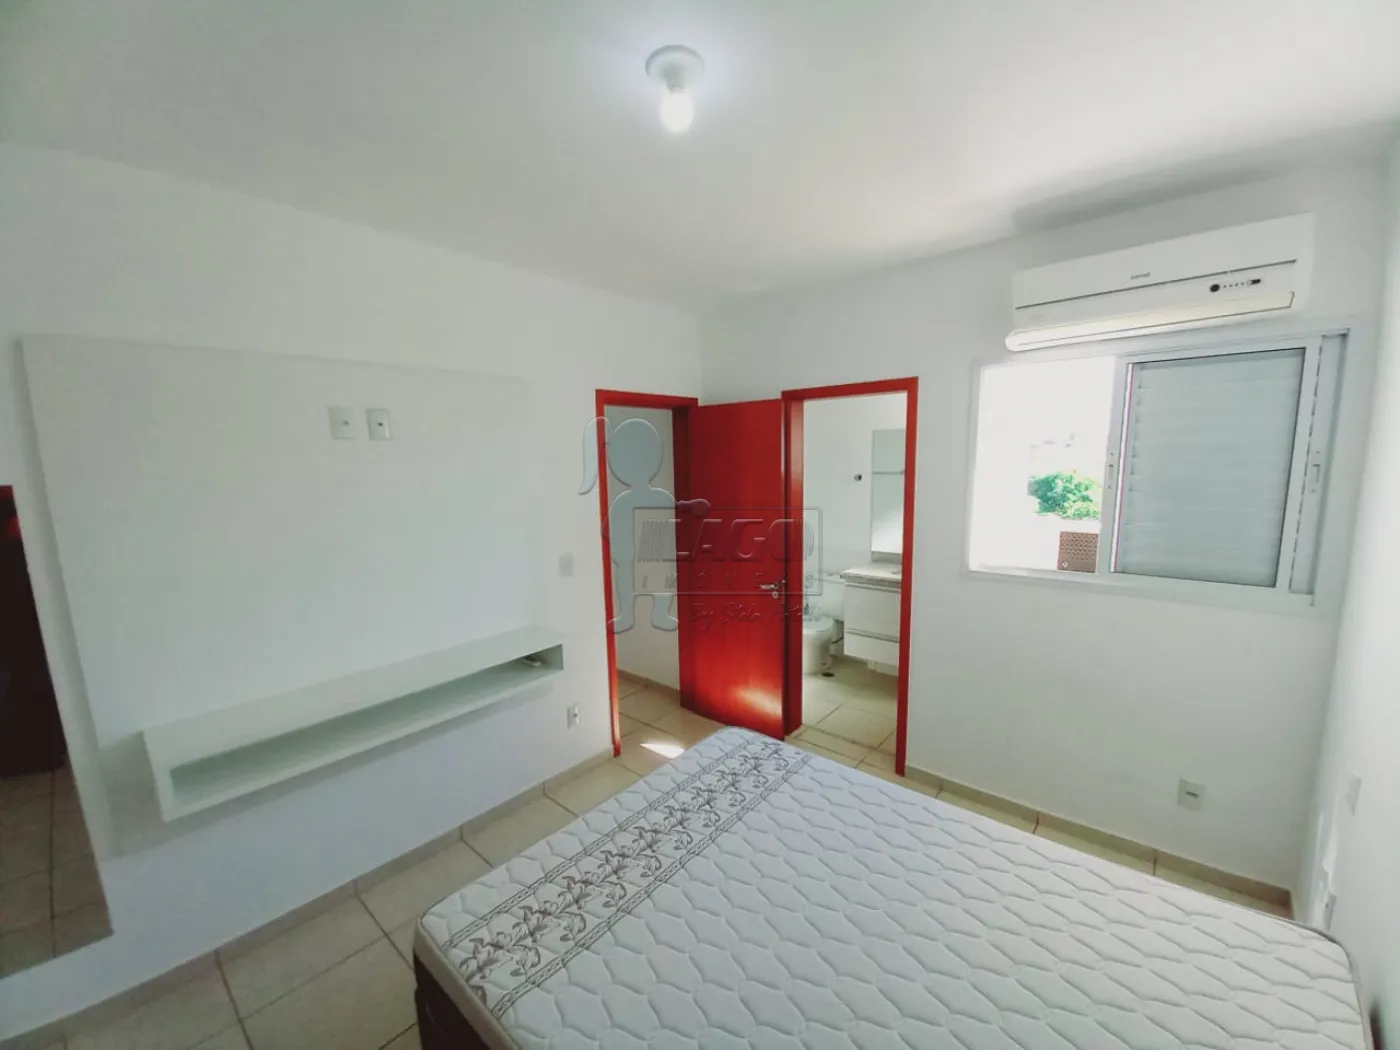 Alugar Apartamentos / Padrão em Ribeirão Preto R$ 1.200,00 - Foto 7